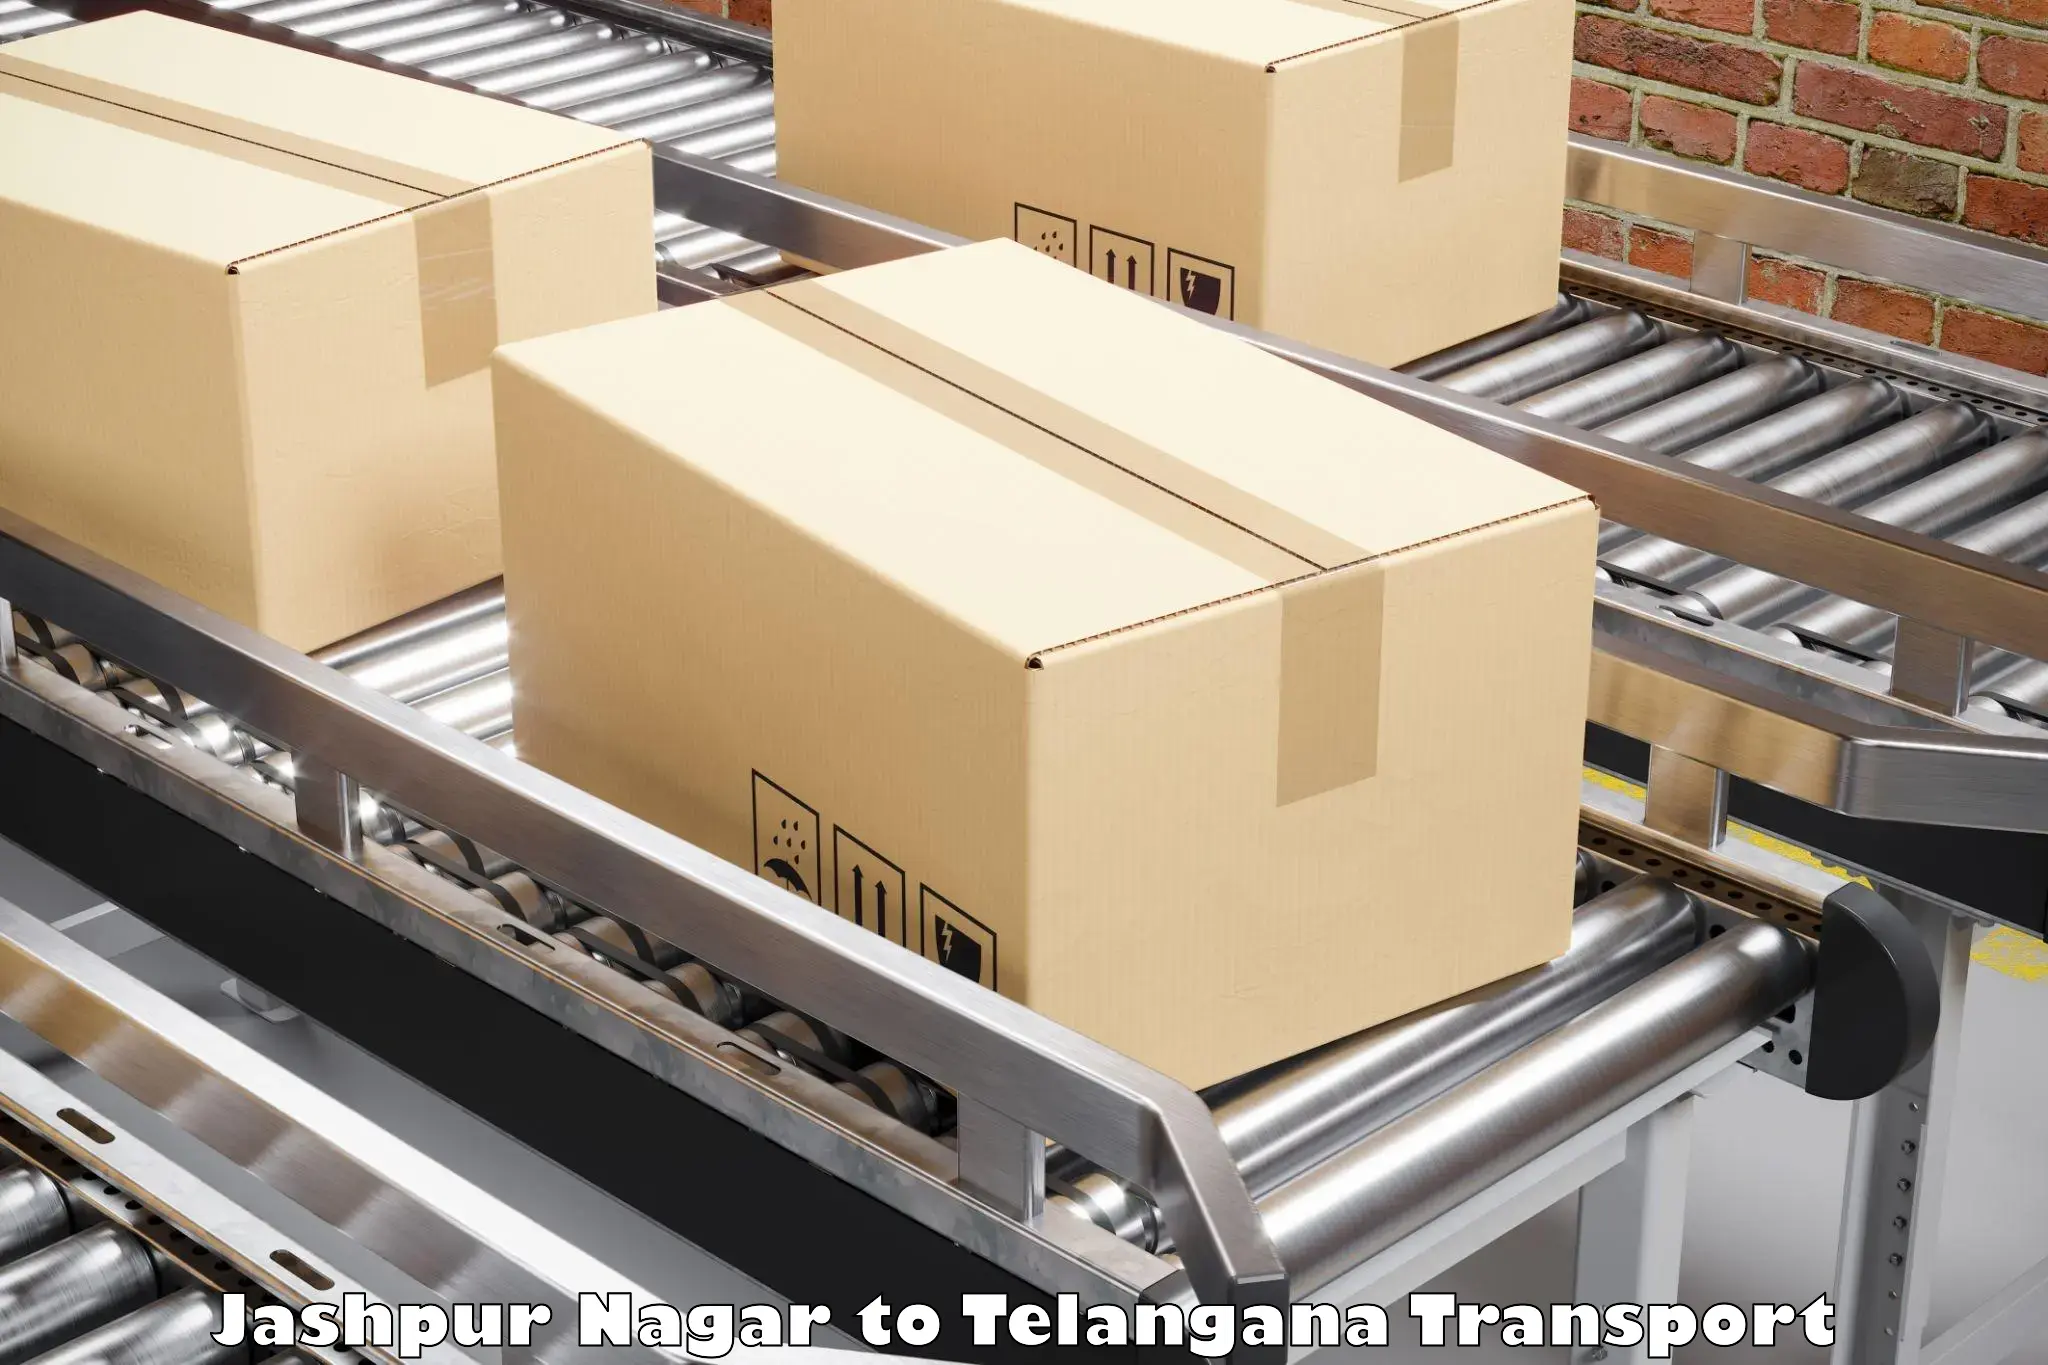 Delivery service Jashpur Nagar to Odela